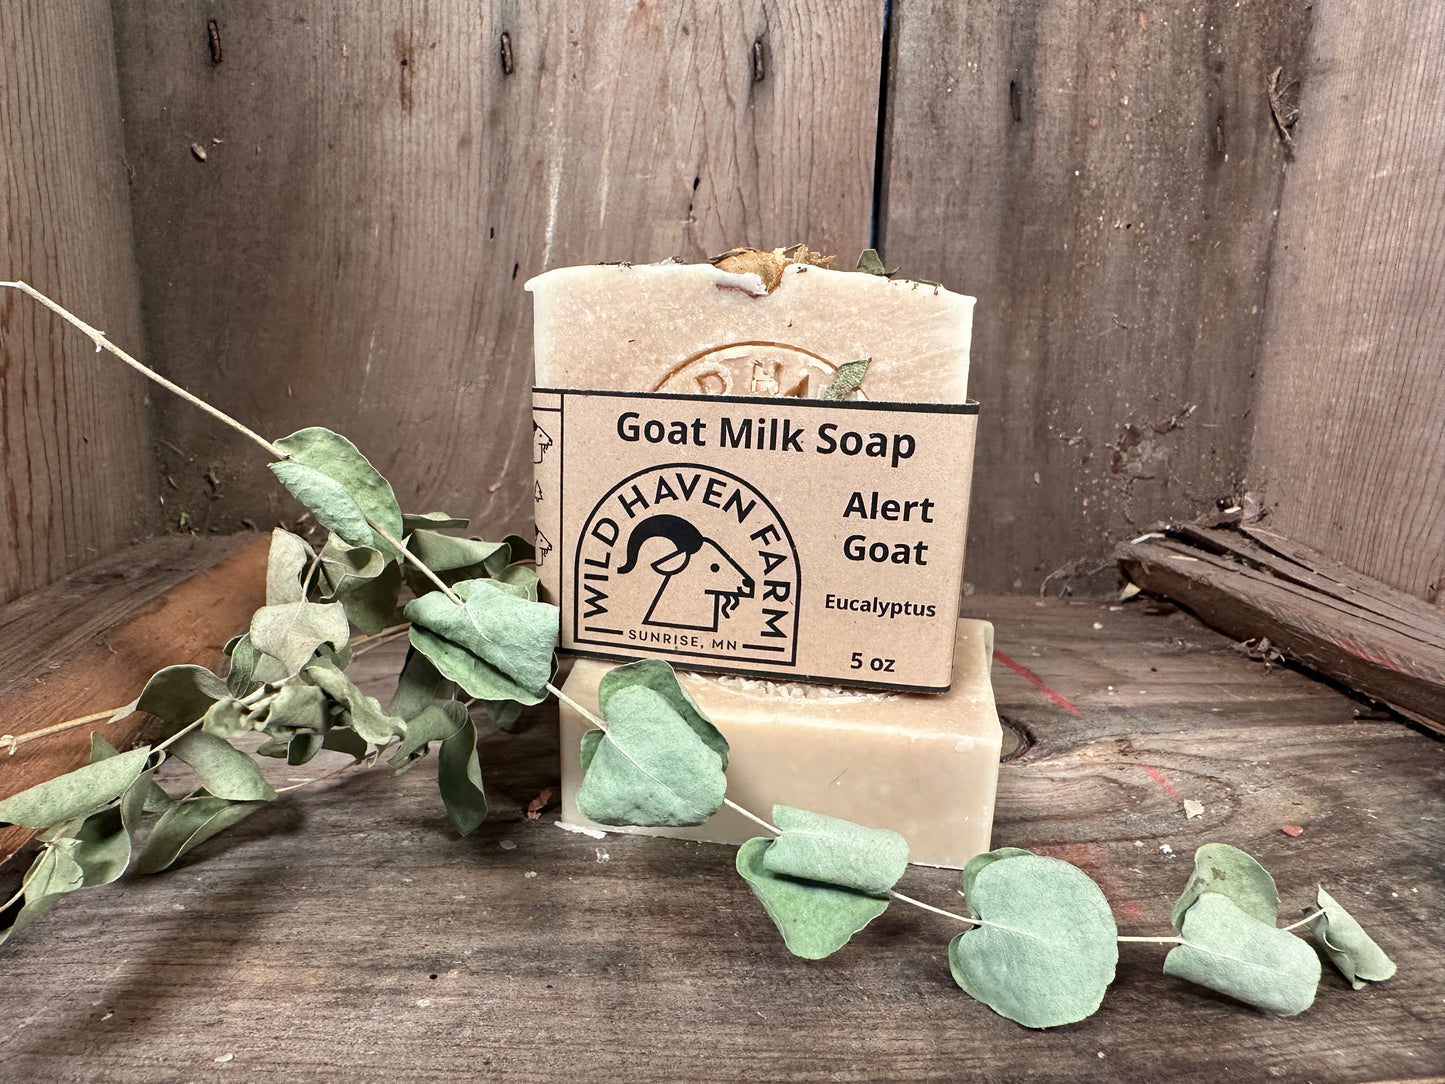 "Alert Goat" - Eucalyptus Goat Milk Soap